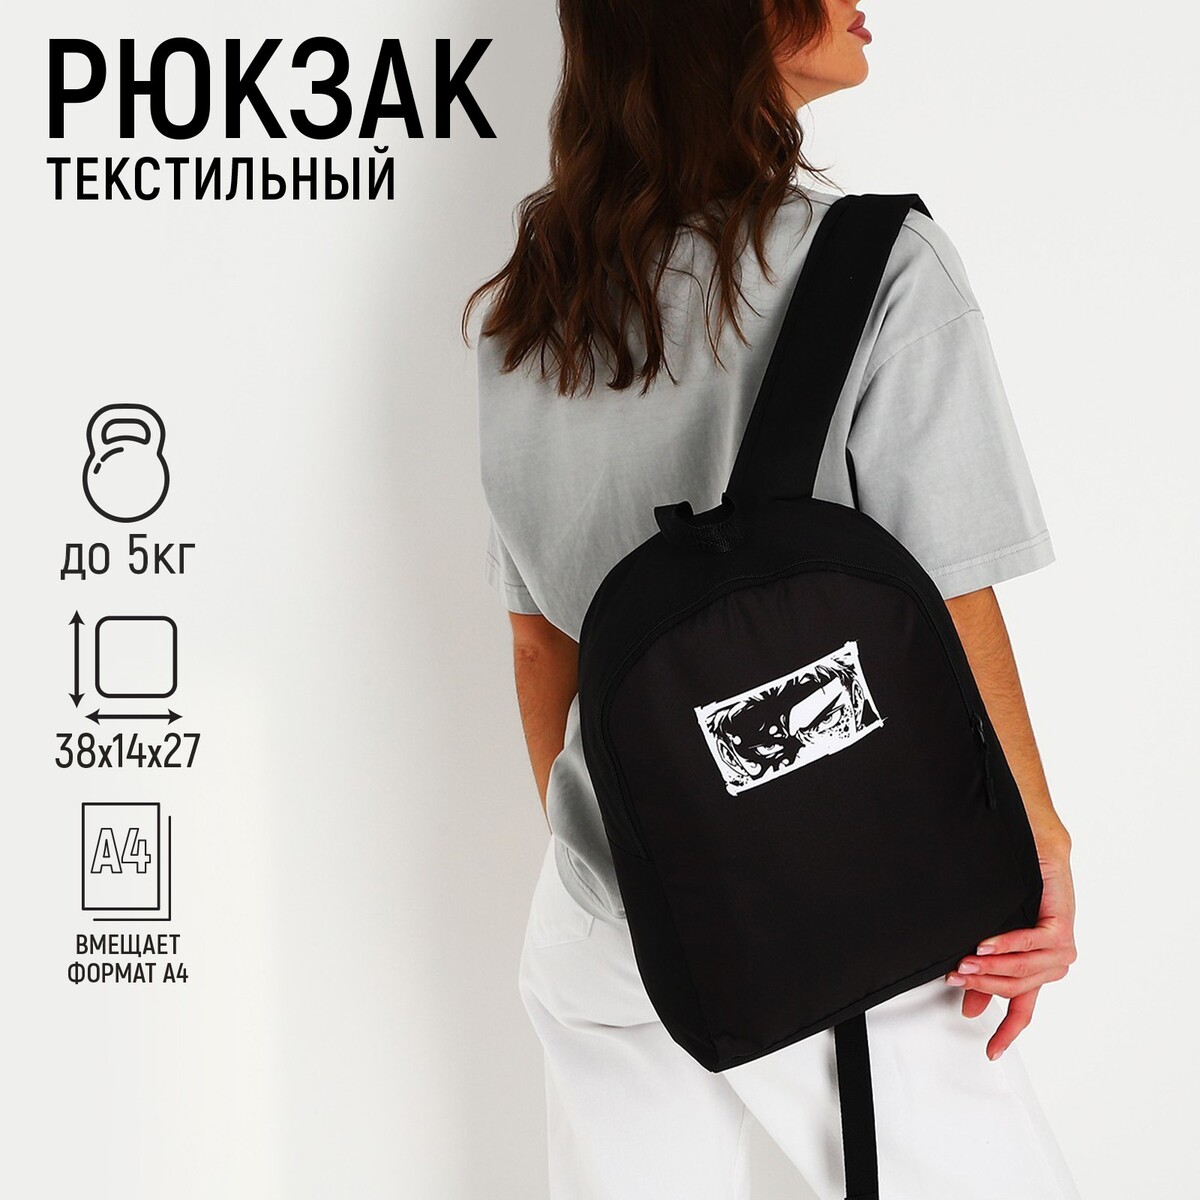 Рюкзак текстильный аниме, 38х14х27 см, цвет черный